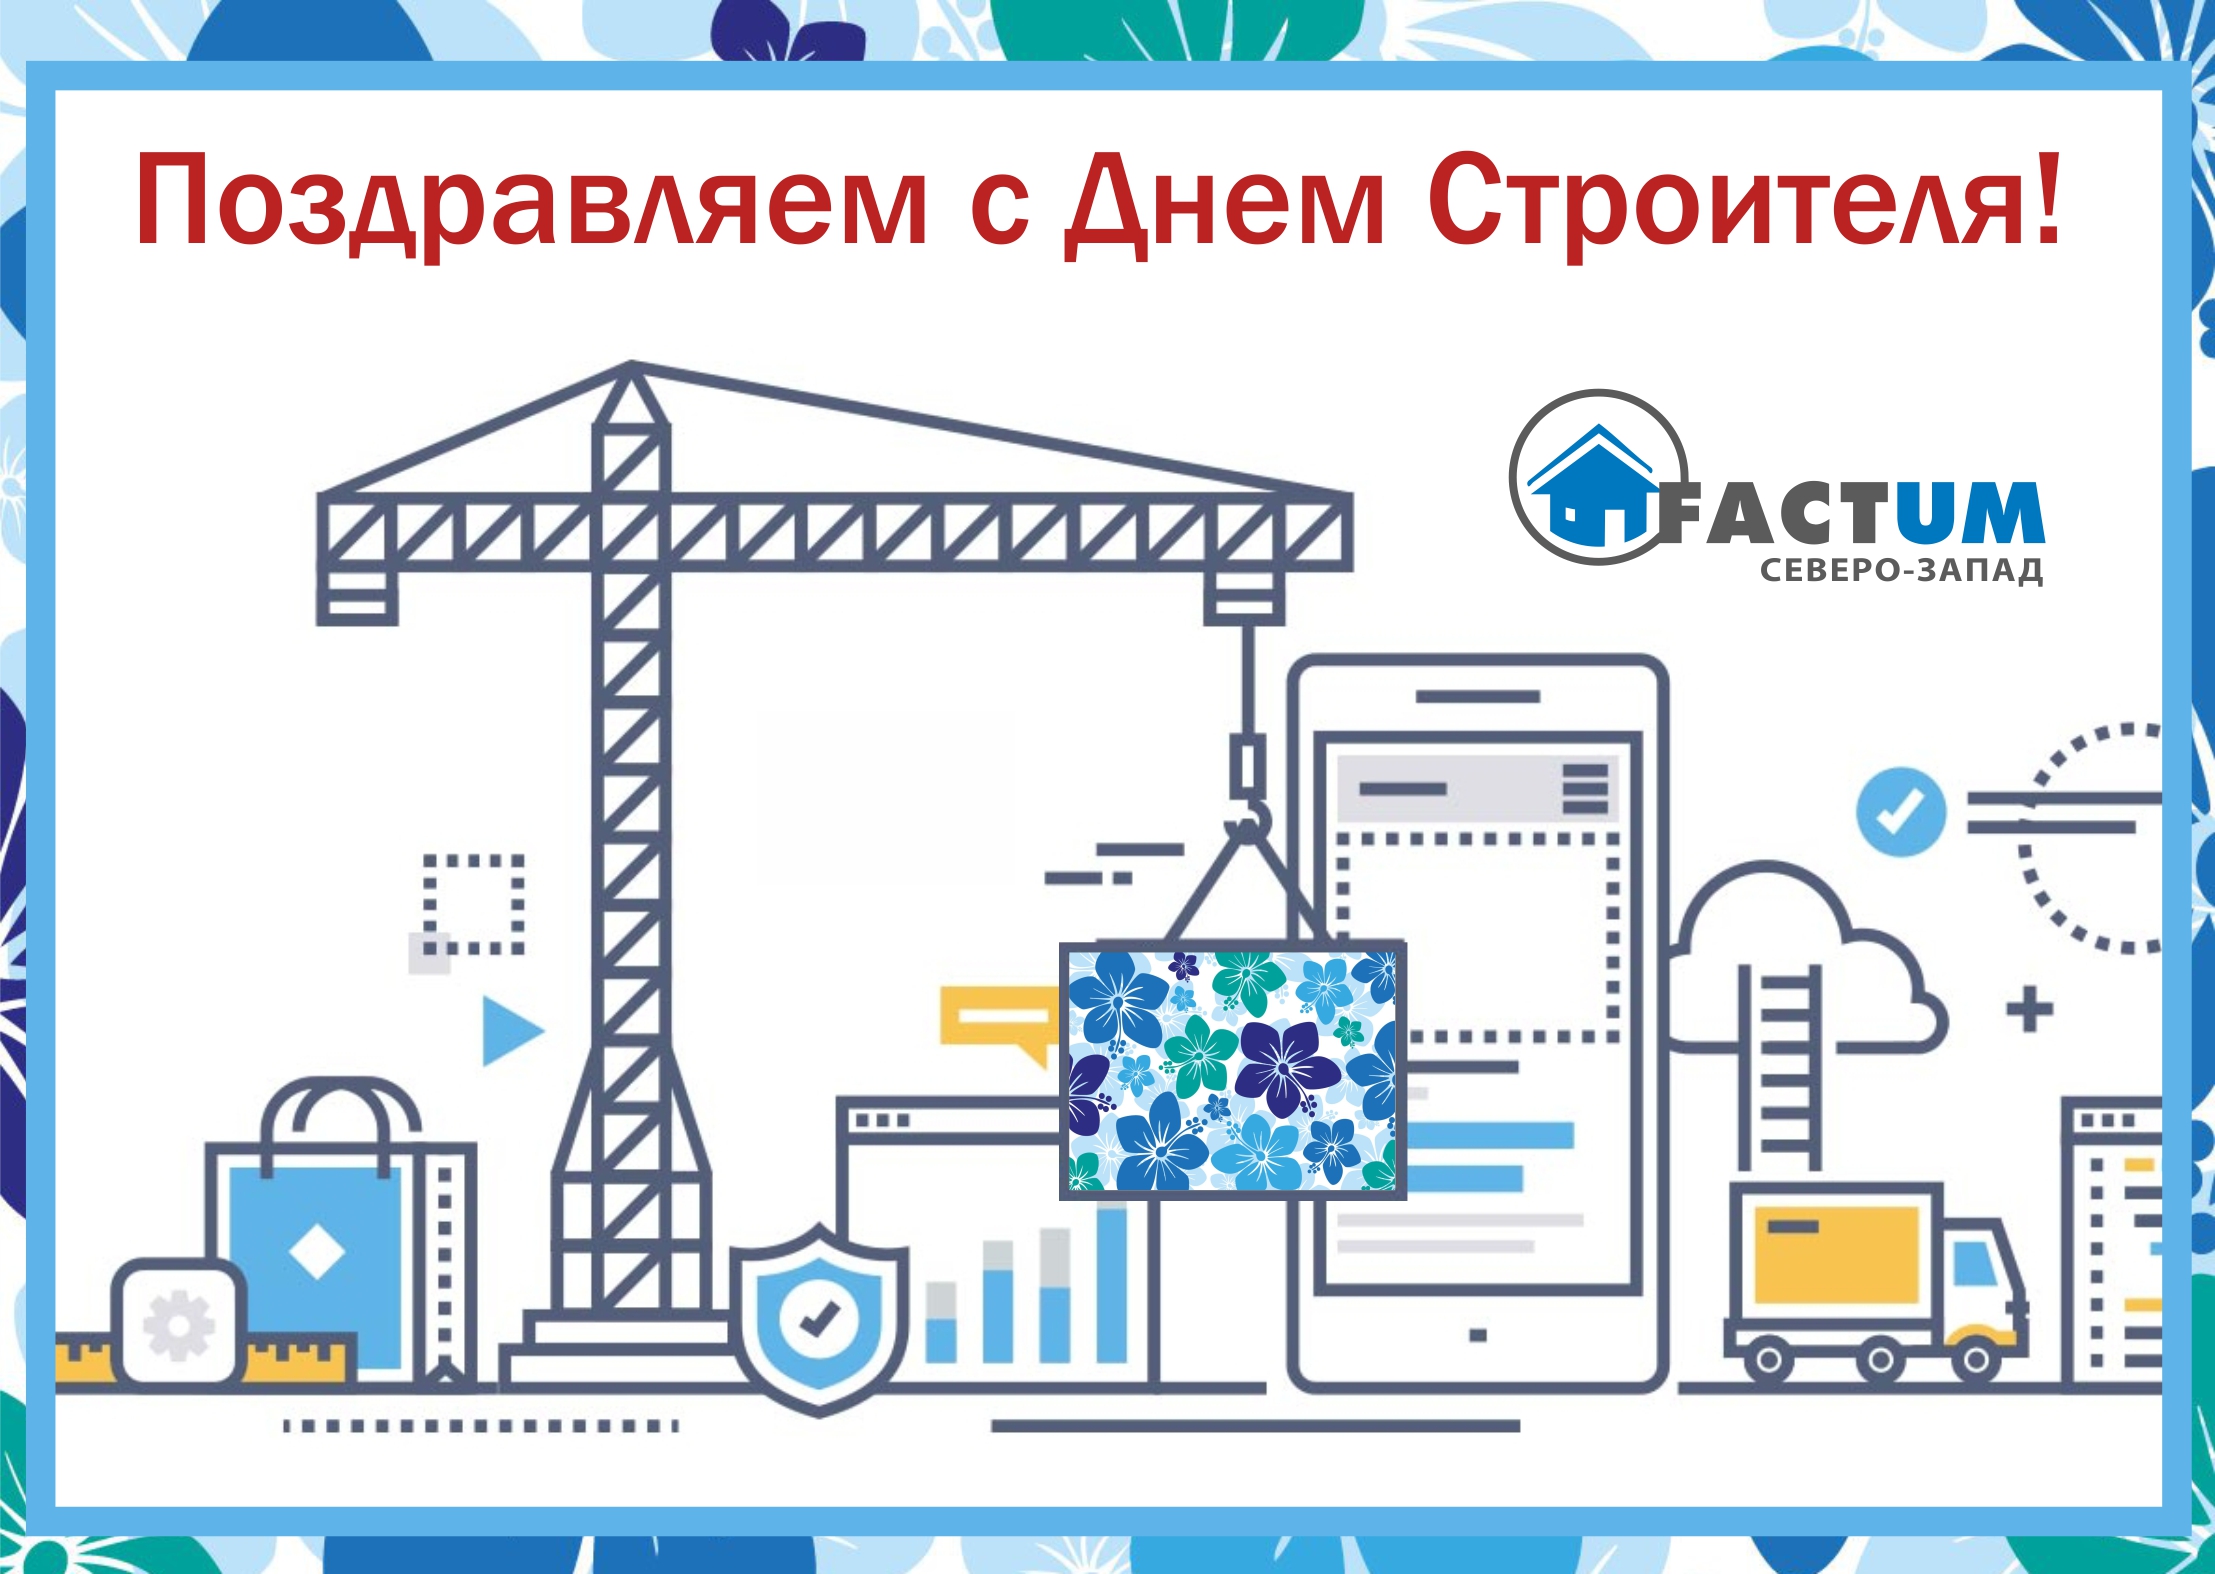 2 Компания «Фактум Северо-Запад», Санкт-Петербург | Козырьки farAcs (Кровент)